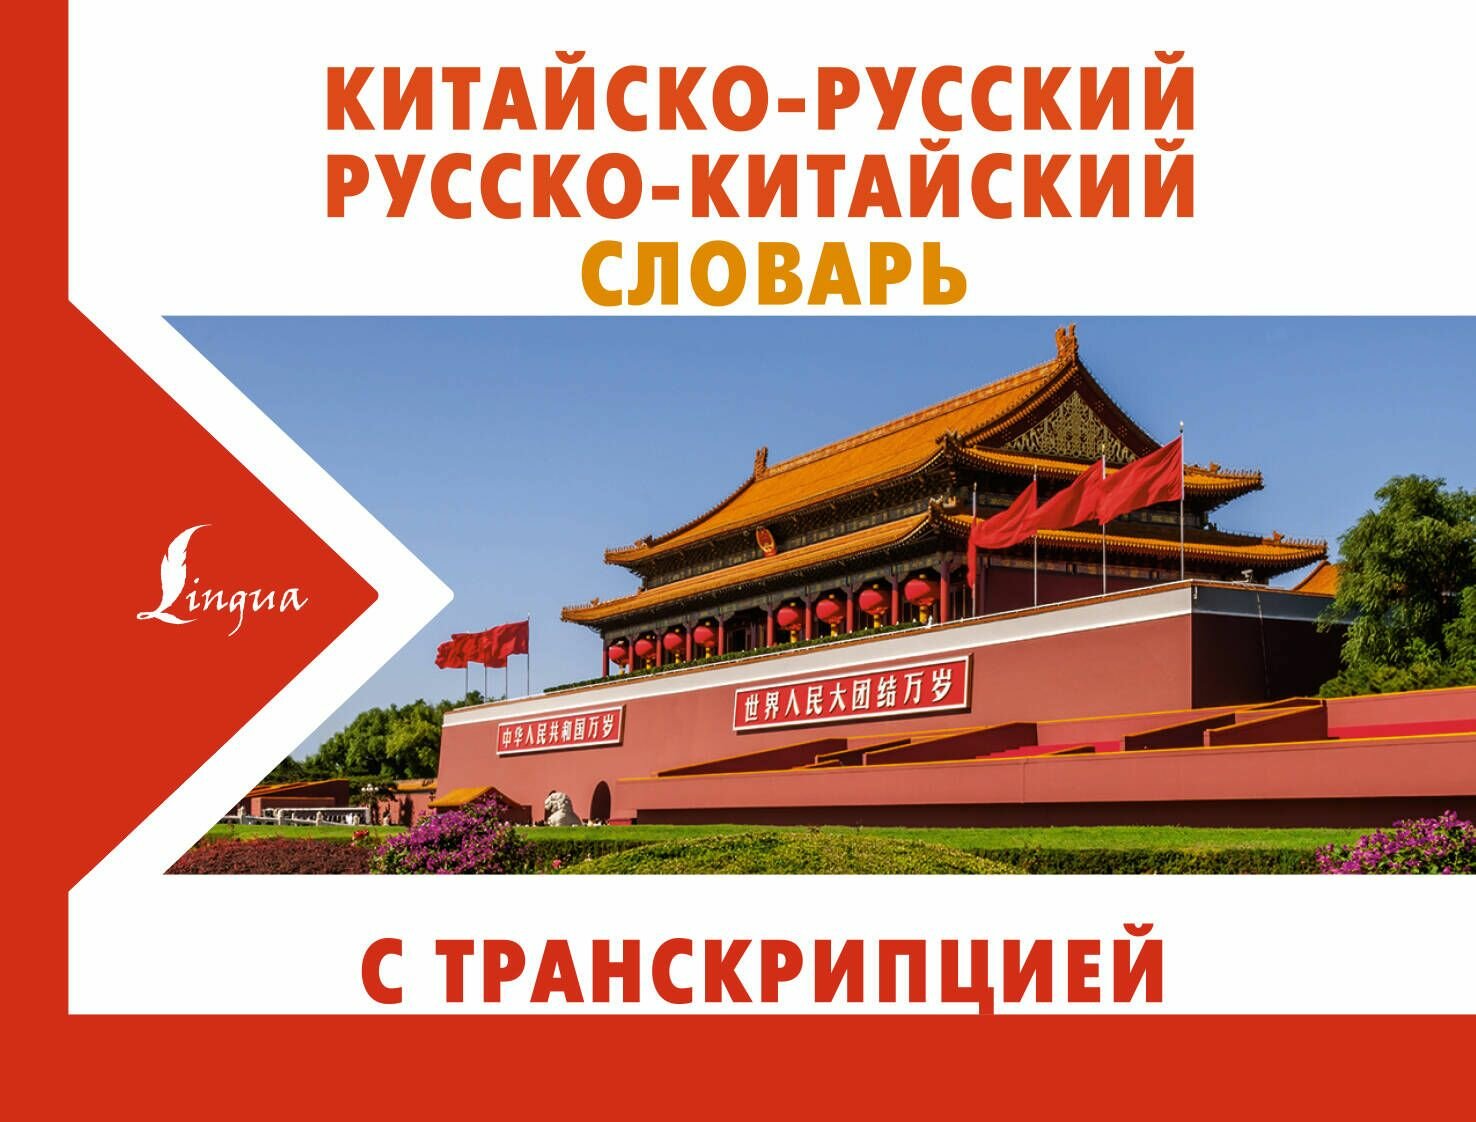 Китайско-русский русско-китайский словарь - фото №3